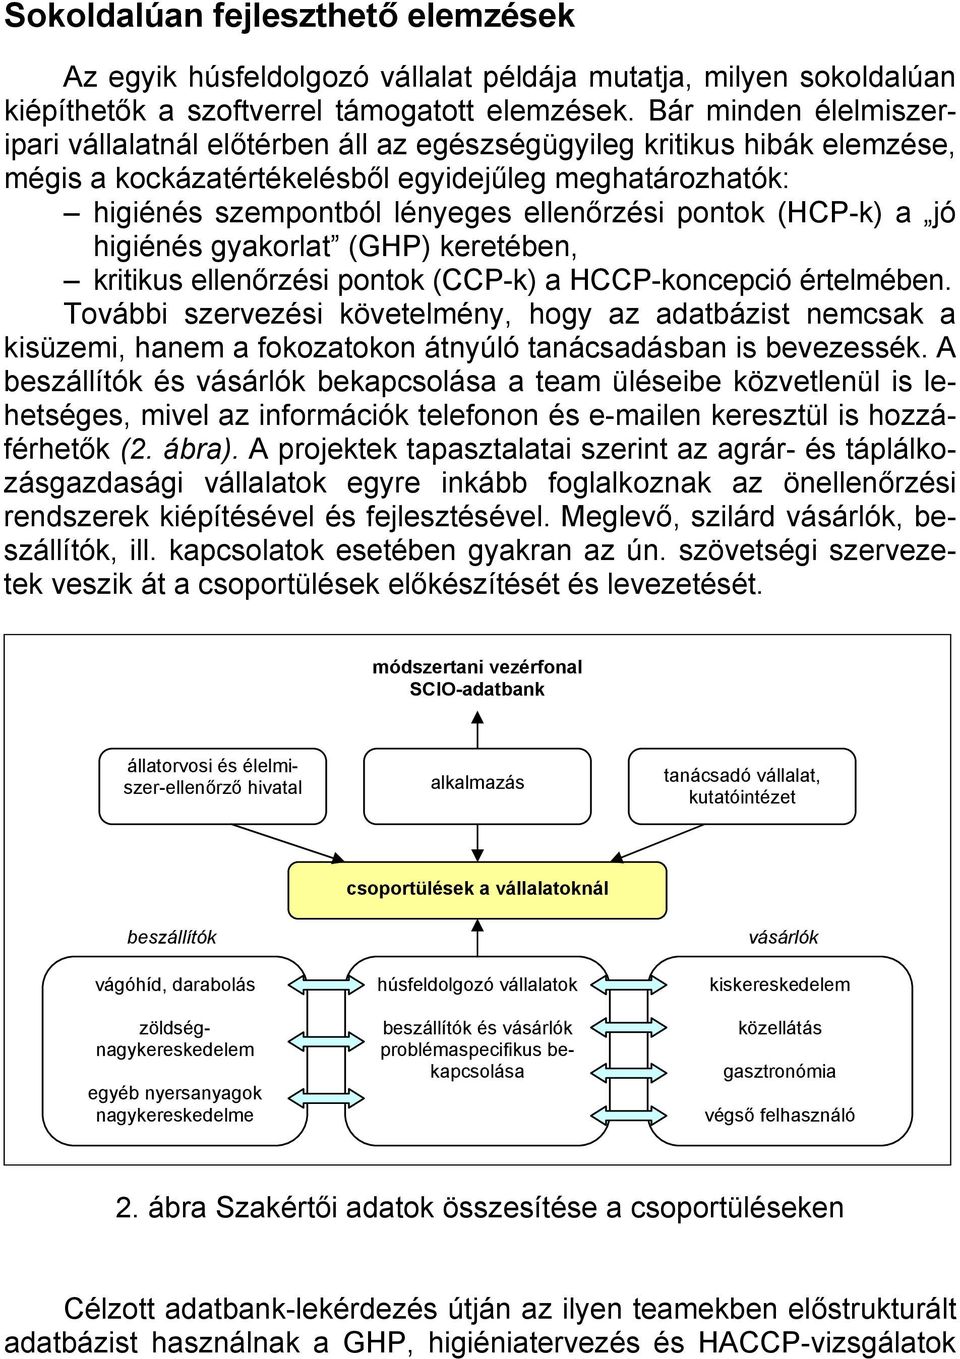 pontok (HCP-k) a jó higiénés gyakorlat (GHP) keretében, kritikus ellenőrzési pontok (CCP-k) a HCCP-koncepció értelmében.